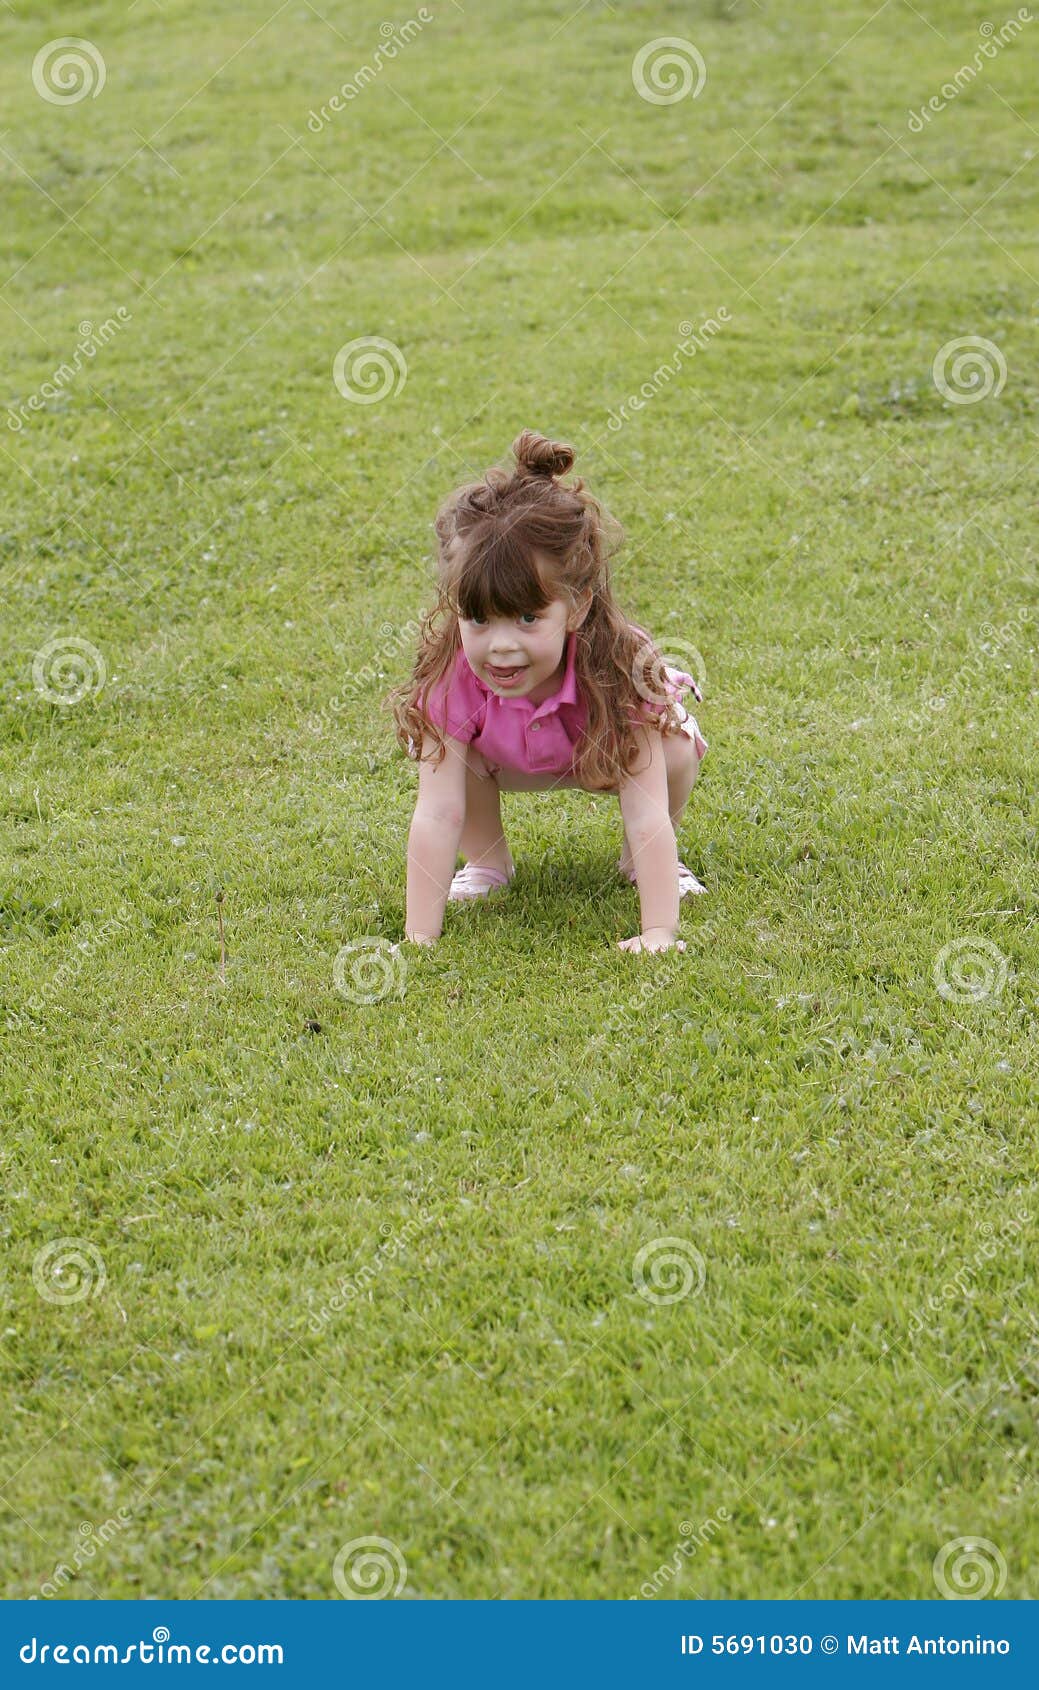 Девушка пошла пописать. Девочка пописала в траву. Маленькая девочка накортачках. Девушка сидит на корточках на траве. Маленькие девчонки на корточках.